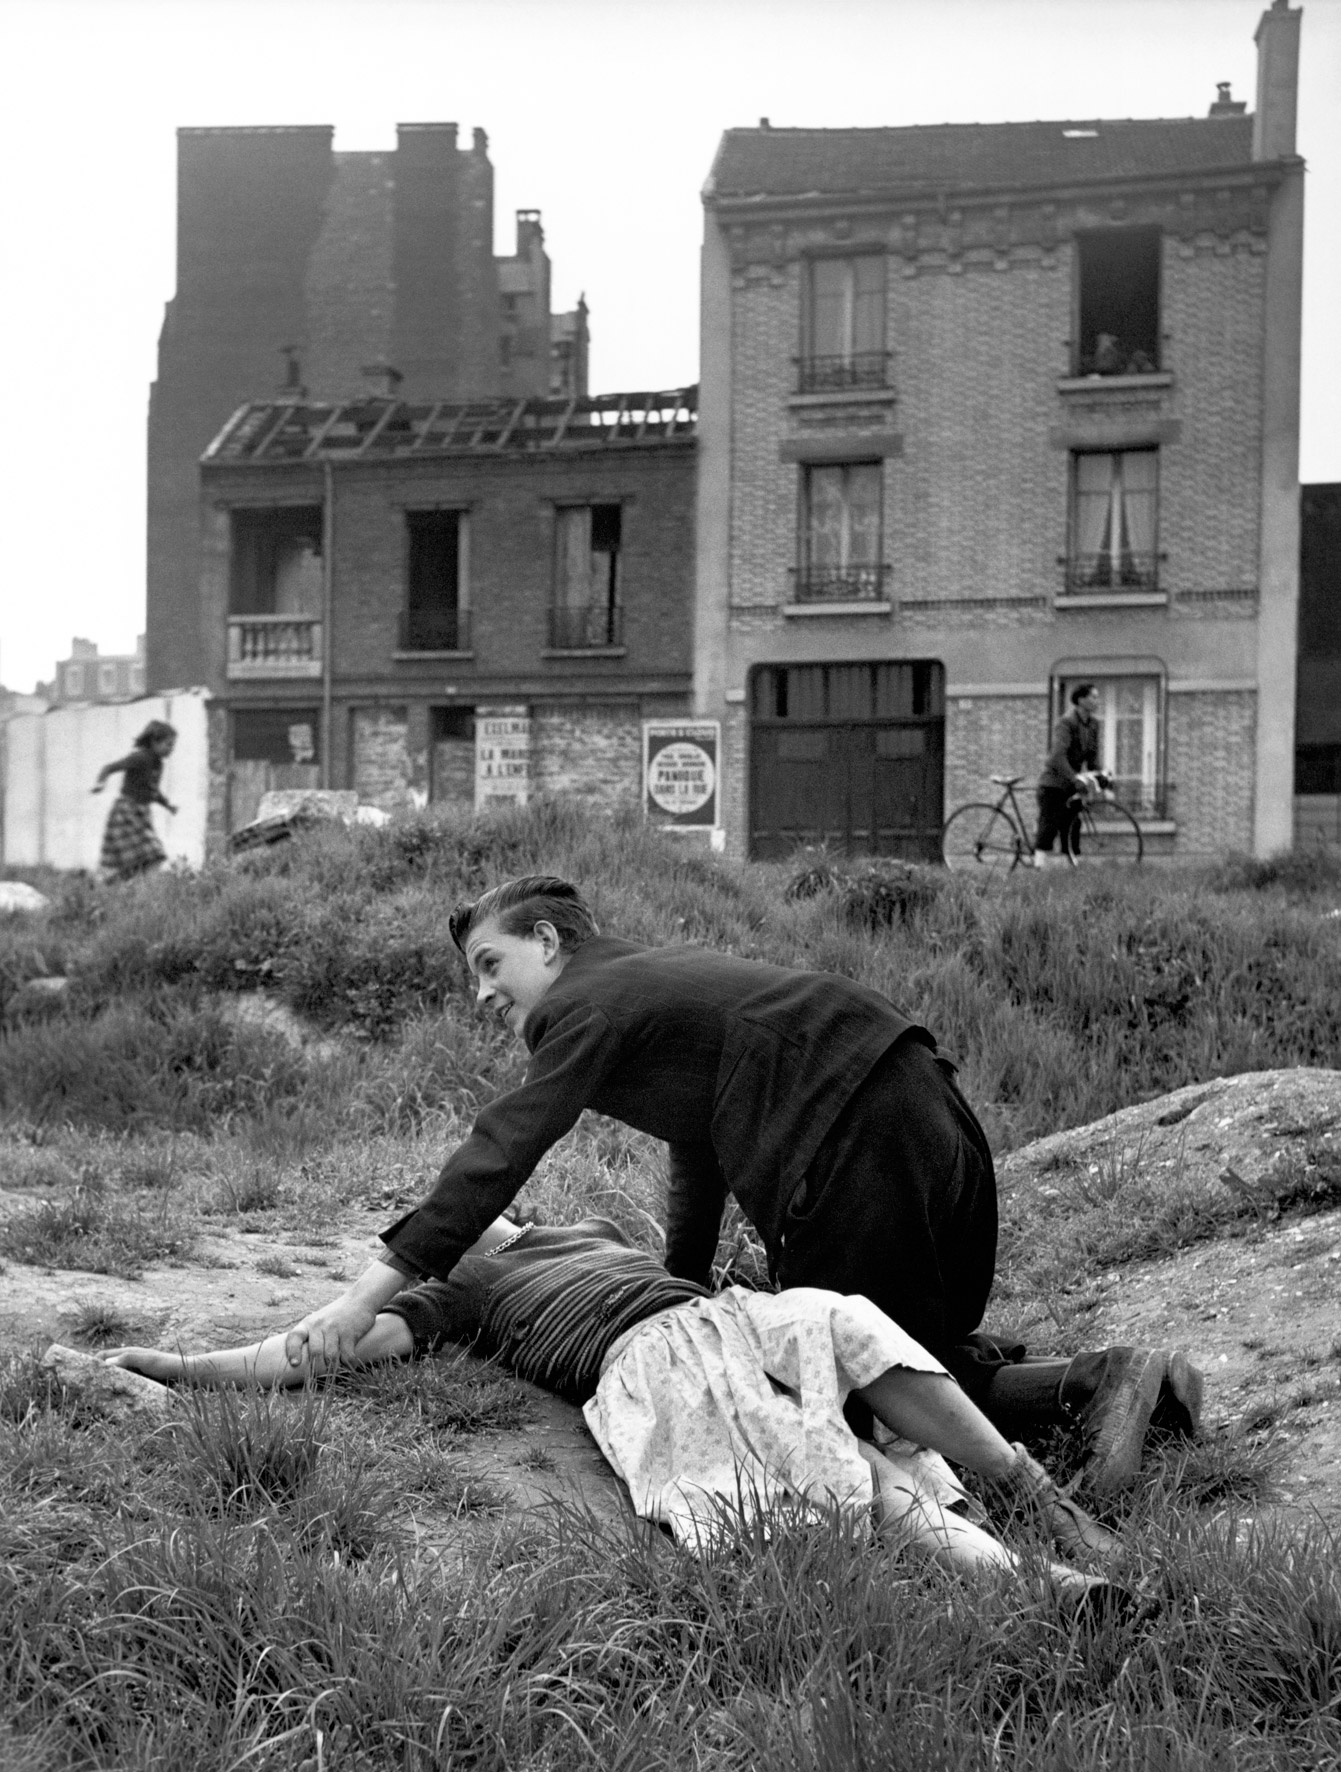 Wasteland, Porte de St Cloud, Paris, 1950.